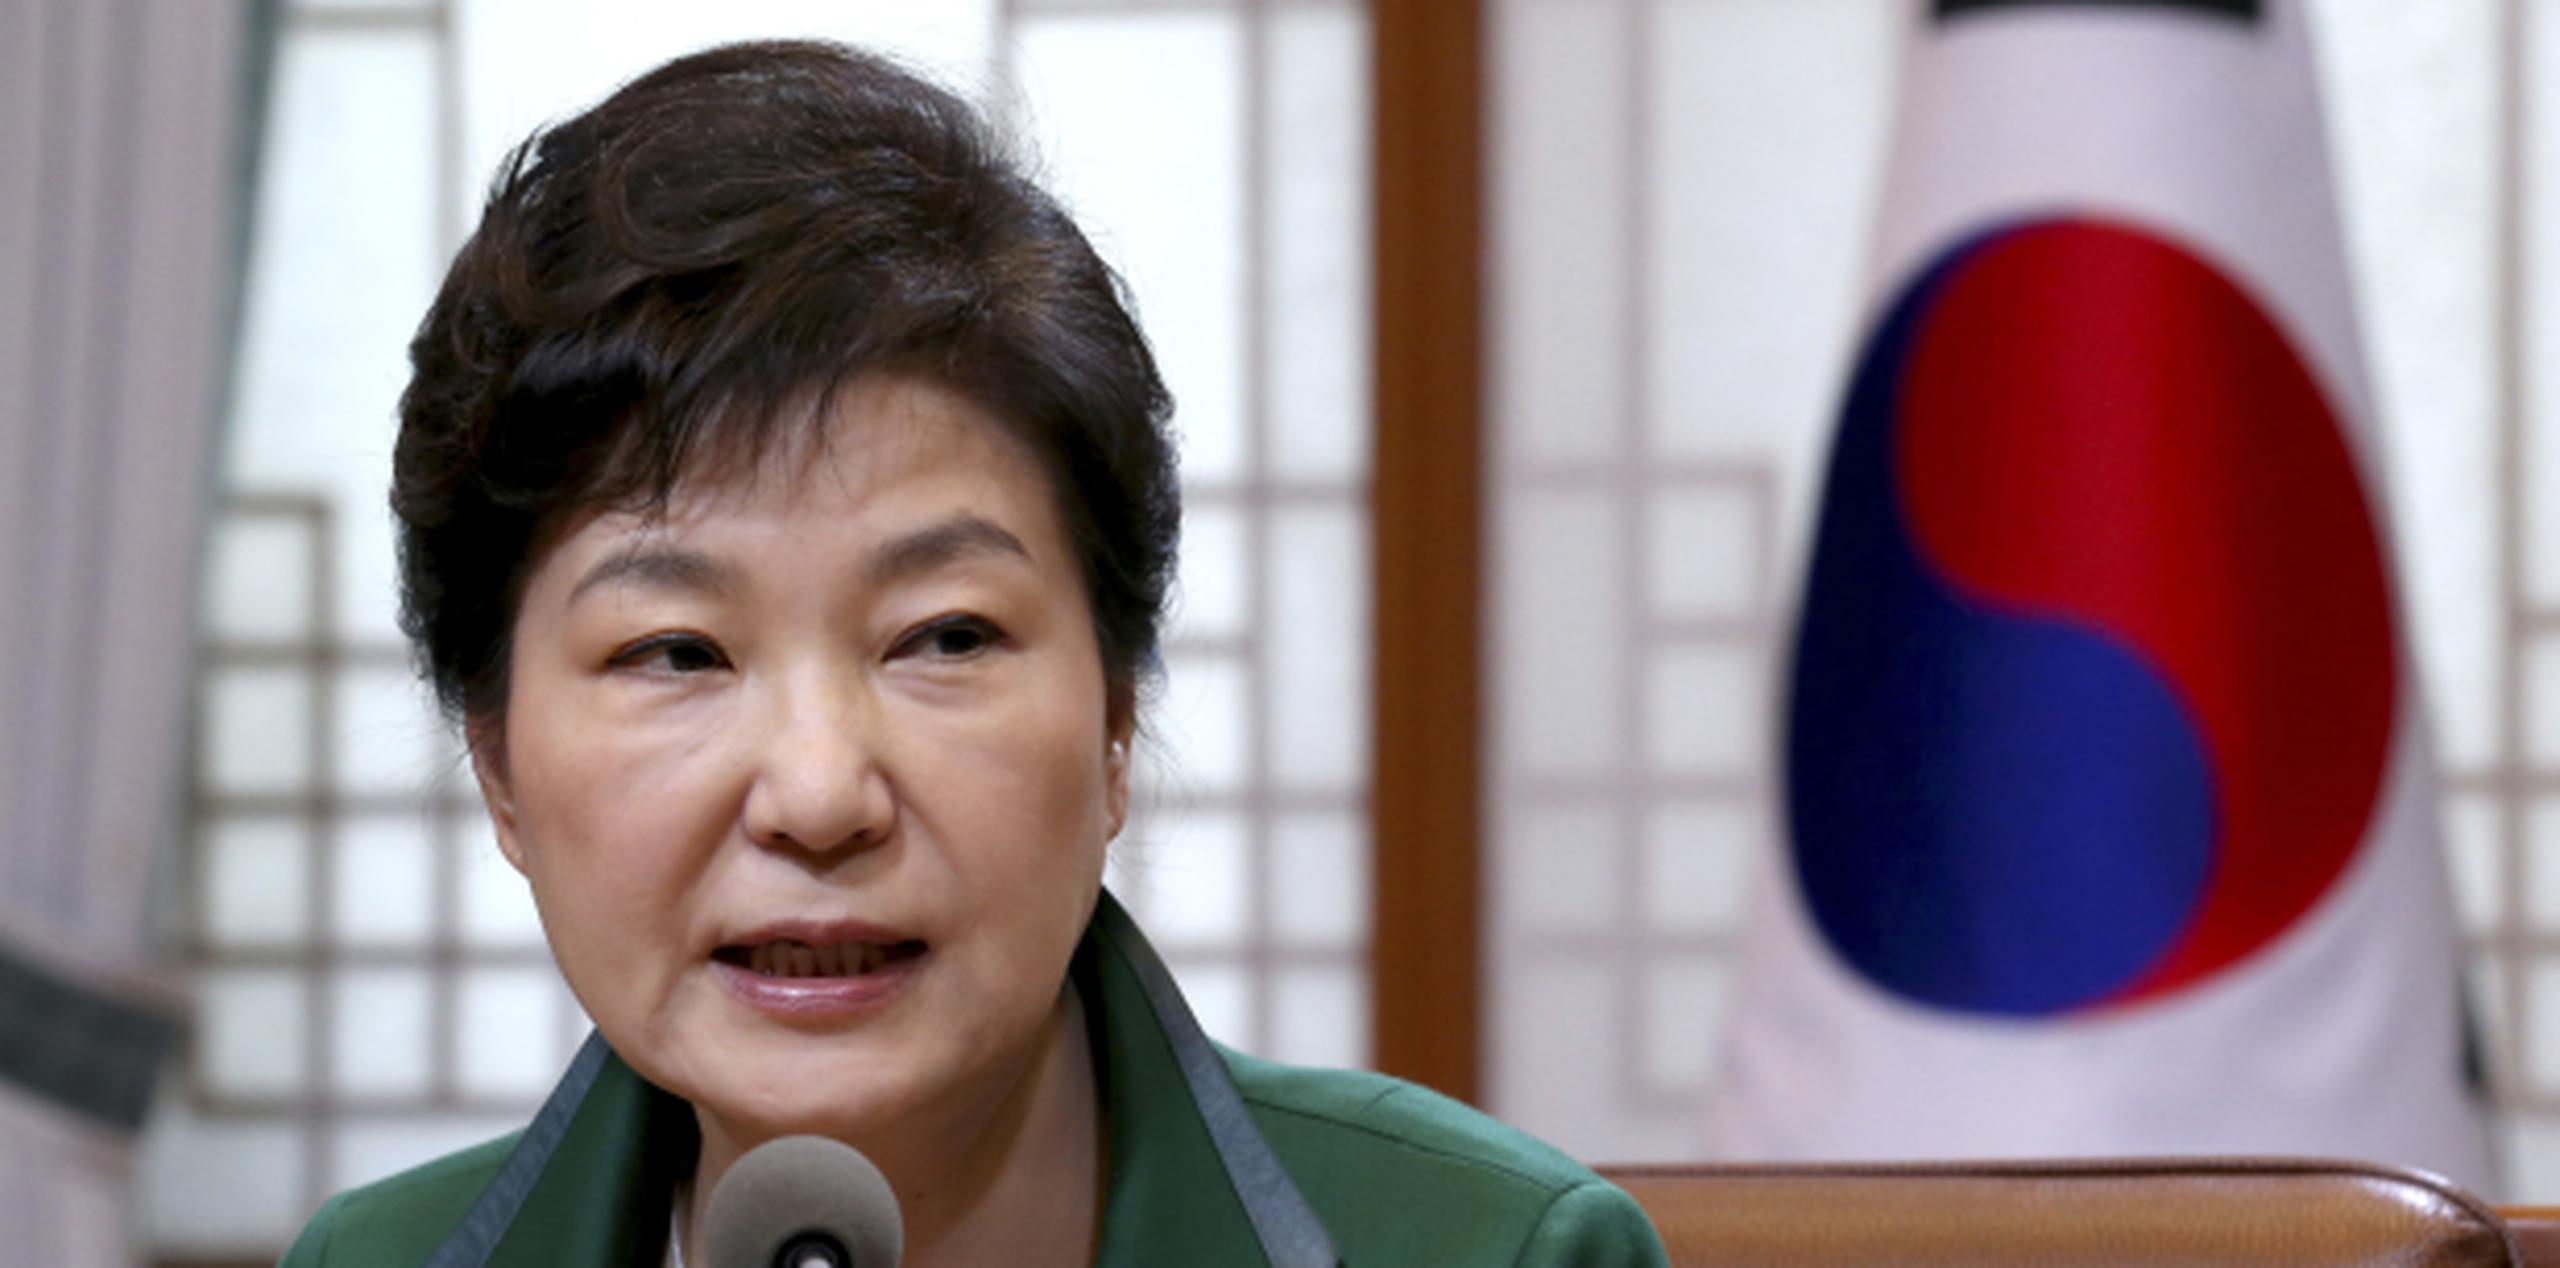 Park no abundó en detalles sobre los indicios que apuntarían a la realización de otra prueba. (Baek Seung-ryul / Yonhap / AP)